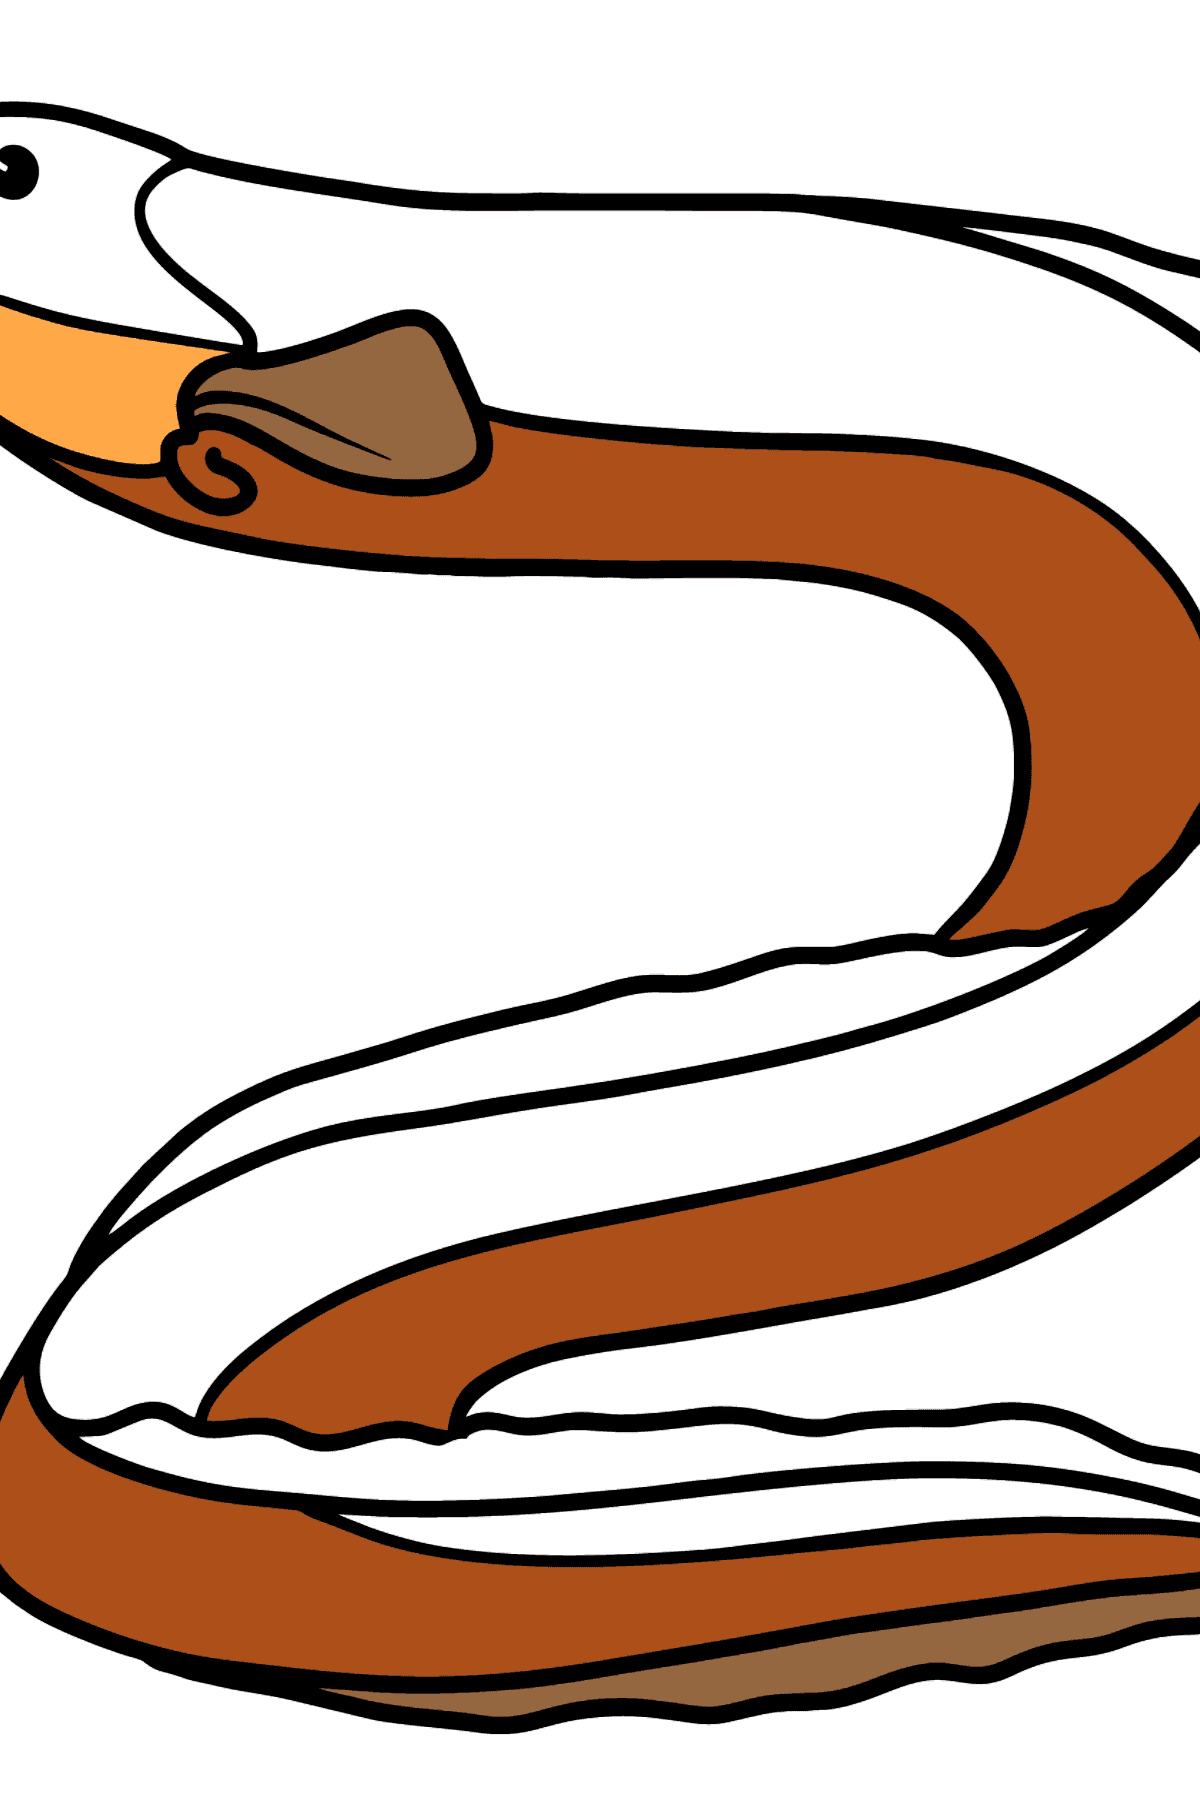 Boyama sayfası yılanbalığı - Boyamalar çocuklar için